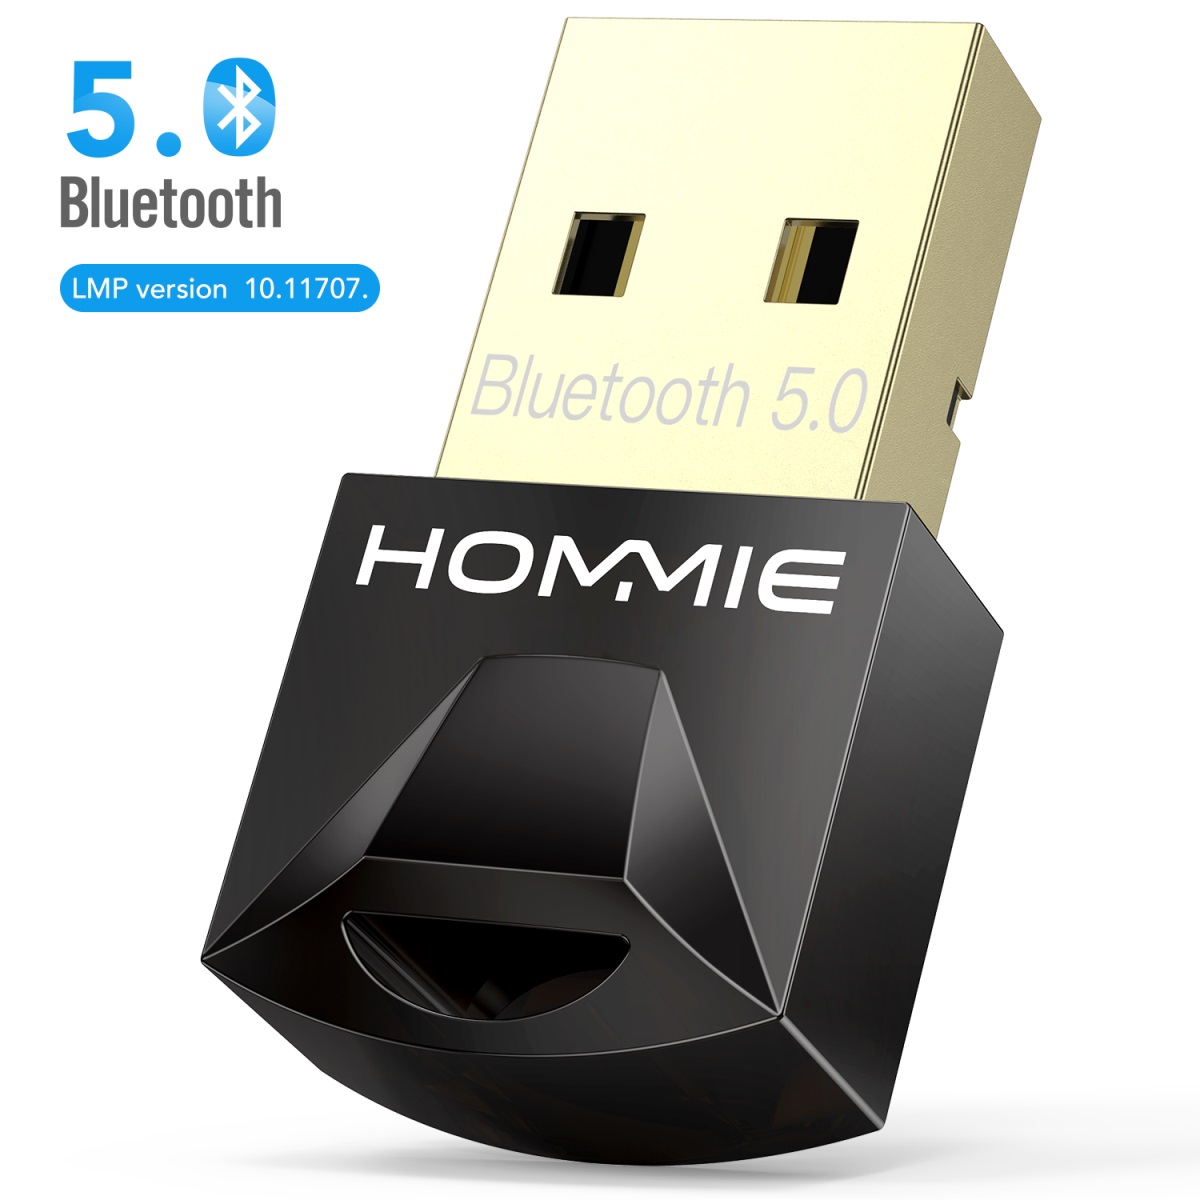 Ver5.0 Bluetoothアダプターでワイヤレス通信を簡単に追加 消費電力が約半分になる省エネ設計 Bluetooth 5.0 Bluetoothアダプター Class2 USBアダプタ ブルートゥース子機 bluetooth お得クーポン発行中 レシーバー パソコン PC ナノサイズ USB apt-X対応 販売期間 限定のお得なタイムセール Dongle 超小型 11対応 8 apt-x 省電力 8.1 Windows7 アダプタ 10 LE対応 ドングル EDR